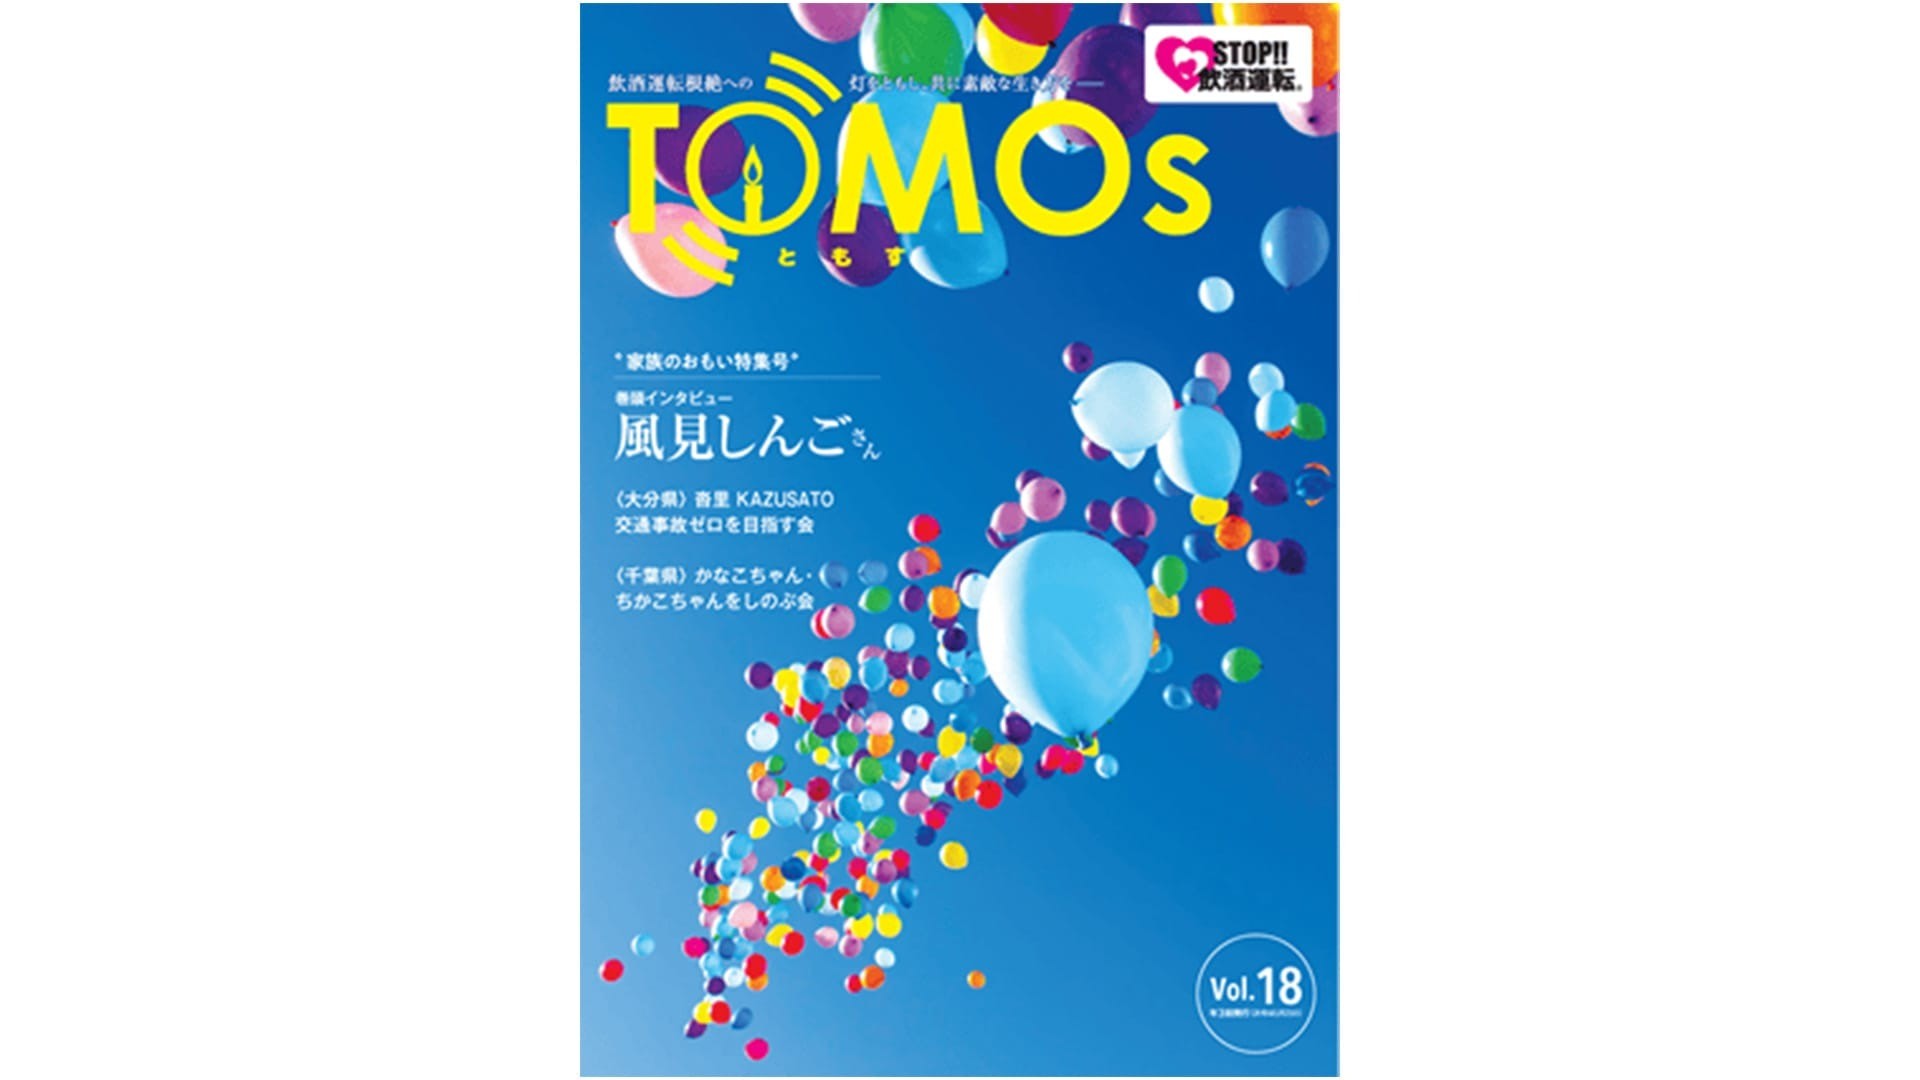 TOMOs vol.18 ”家族のおもい特集号” 風見しんごさんインタビュー